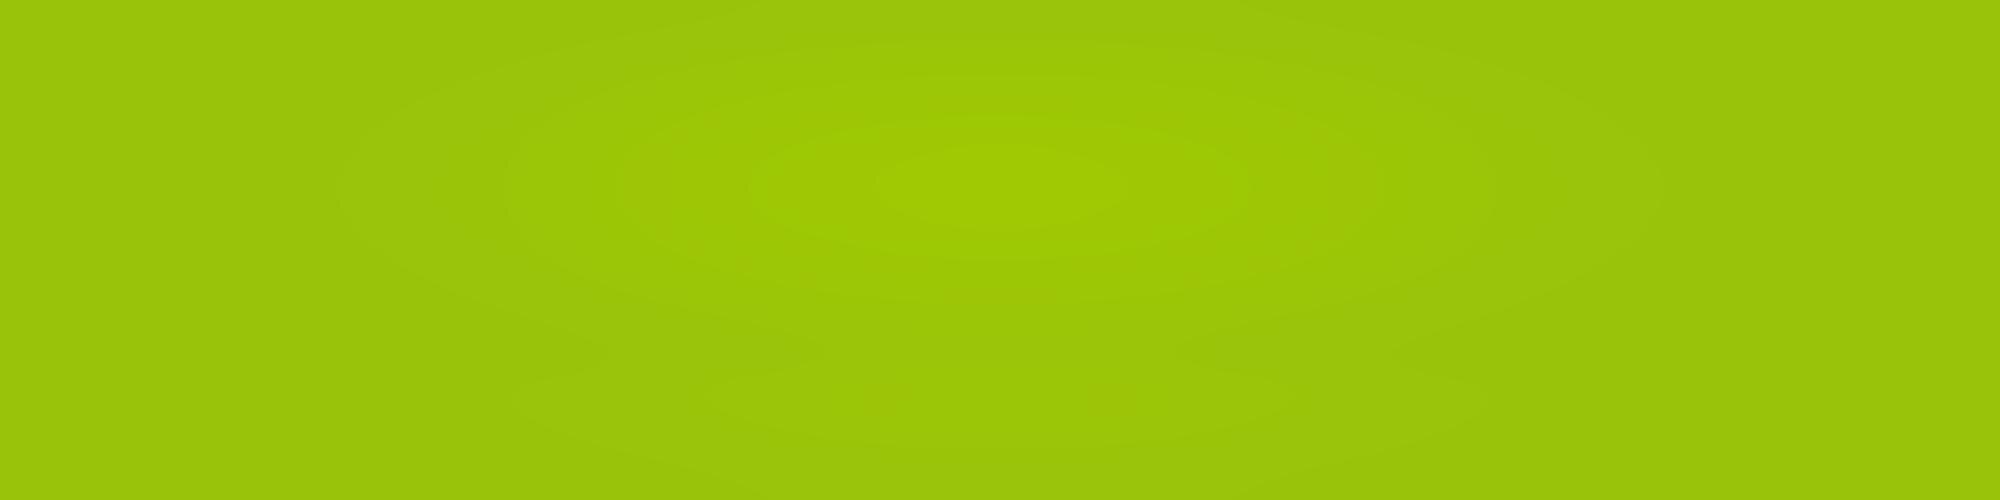 Fondos De Colores Verdes Imágenes de Color Verde Manzana - Descarga gratuita en Freepik